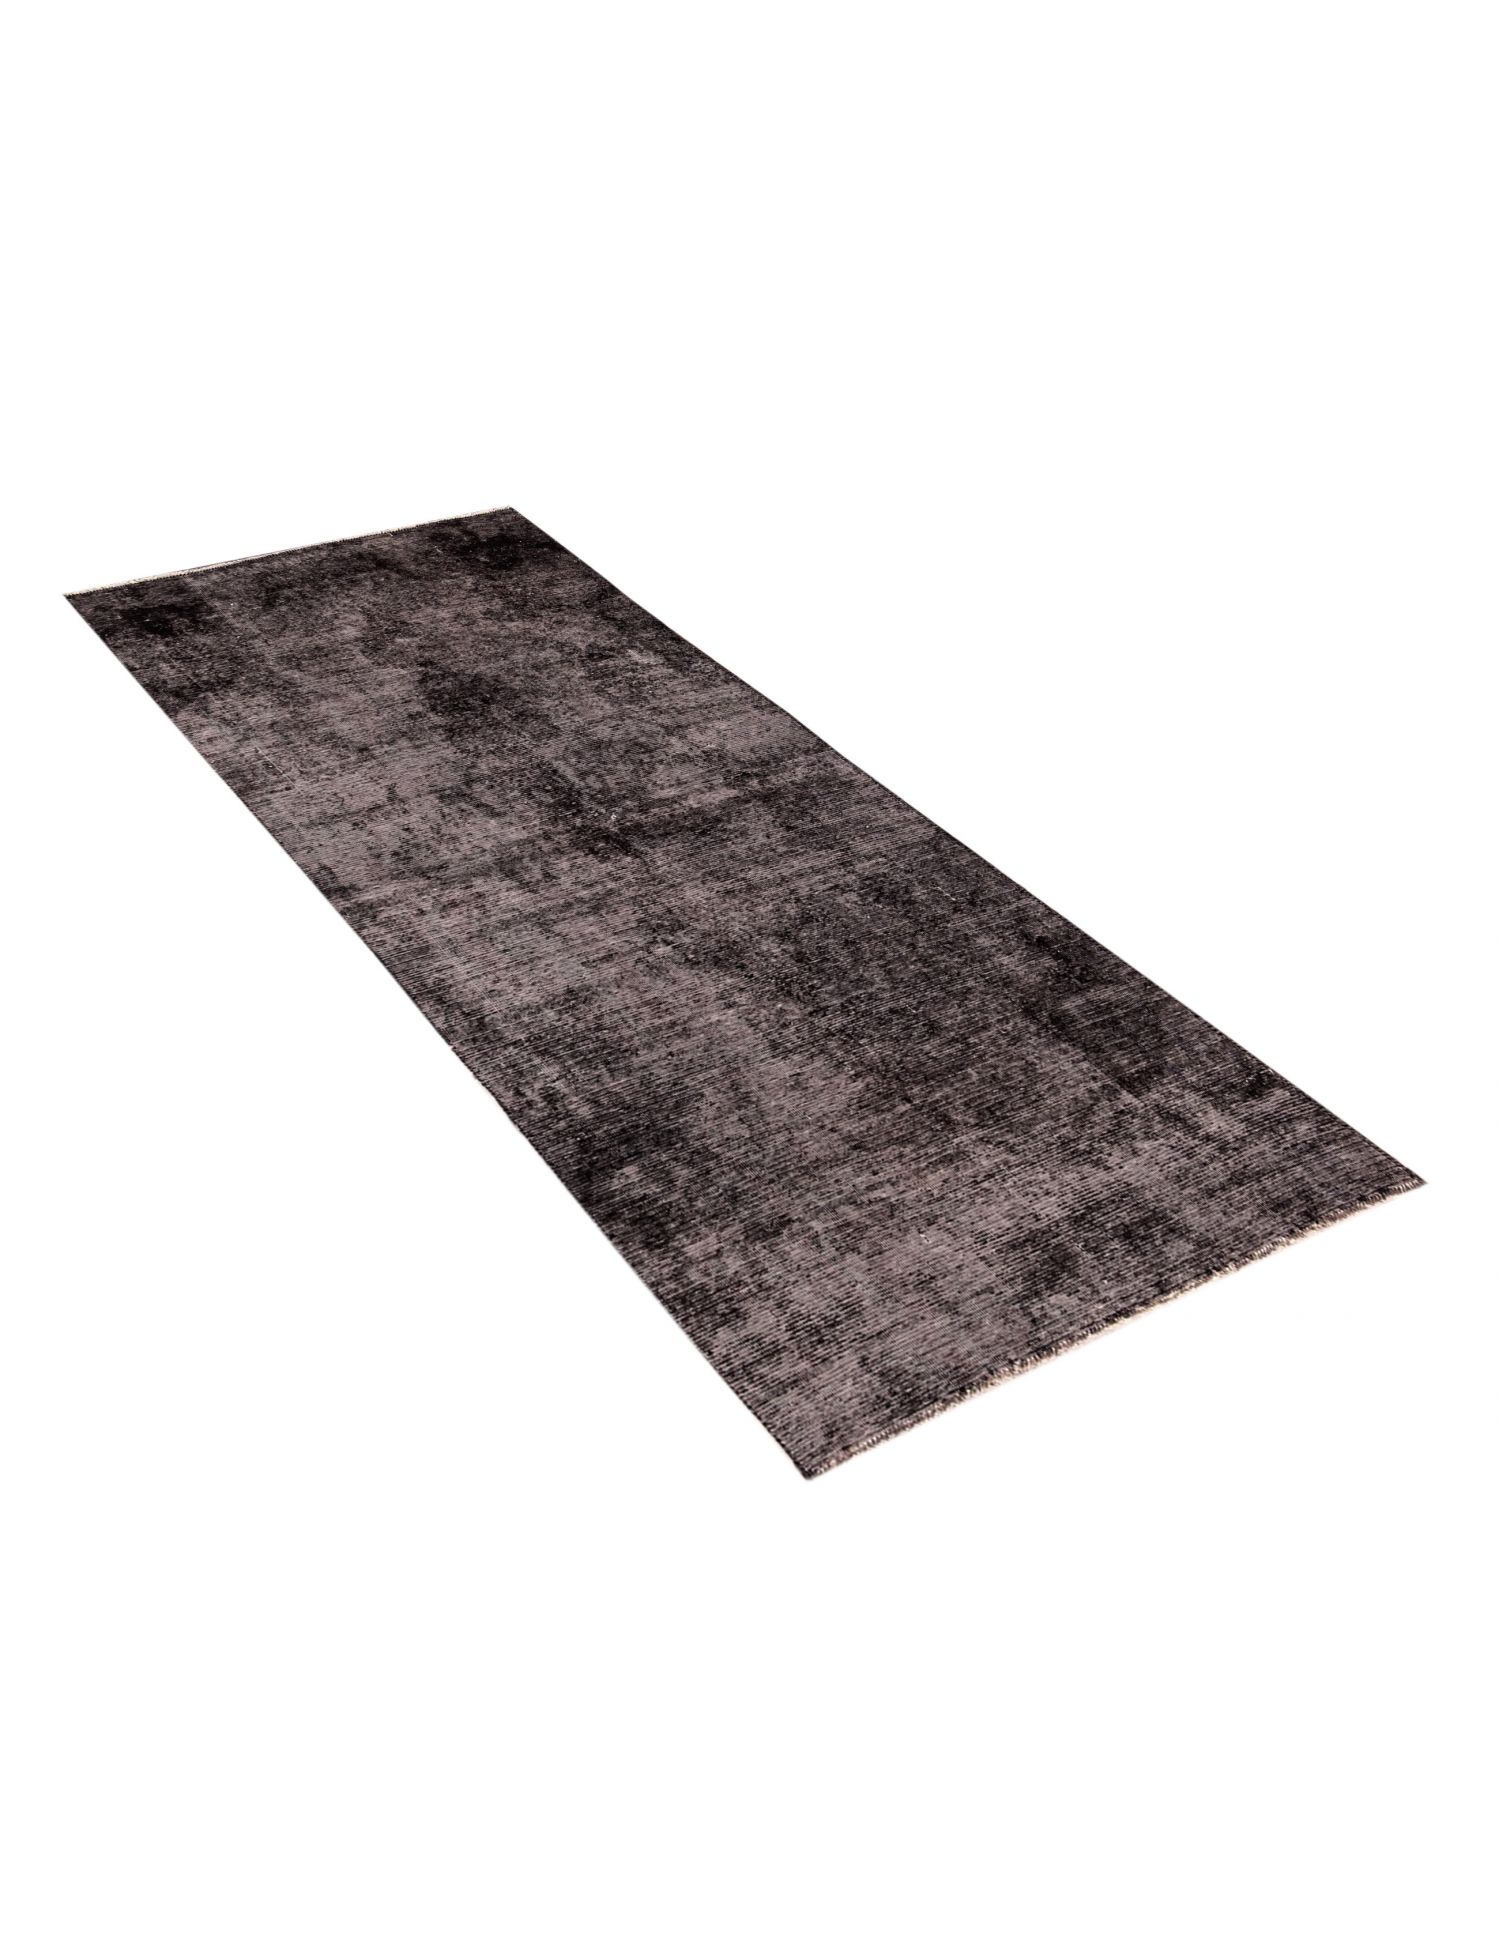 Persian Vintage Carpet  black <br/>235 x 120 cm